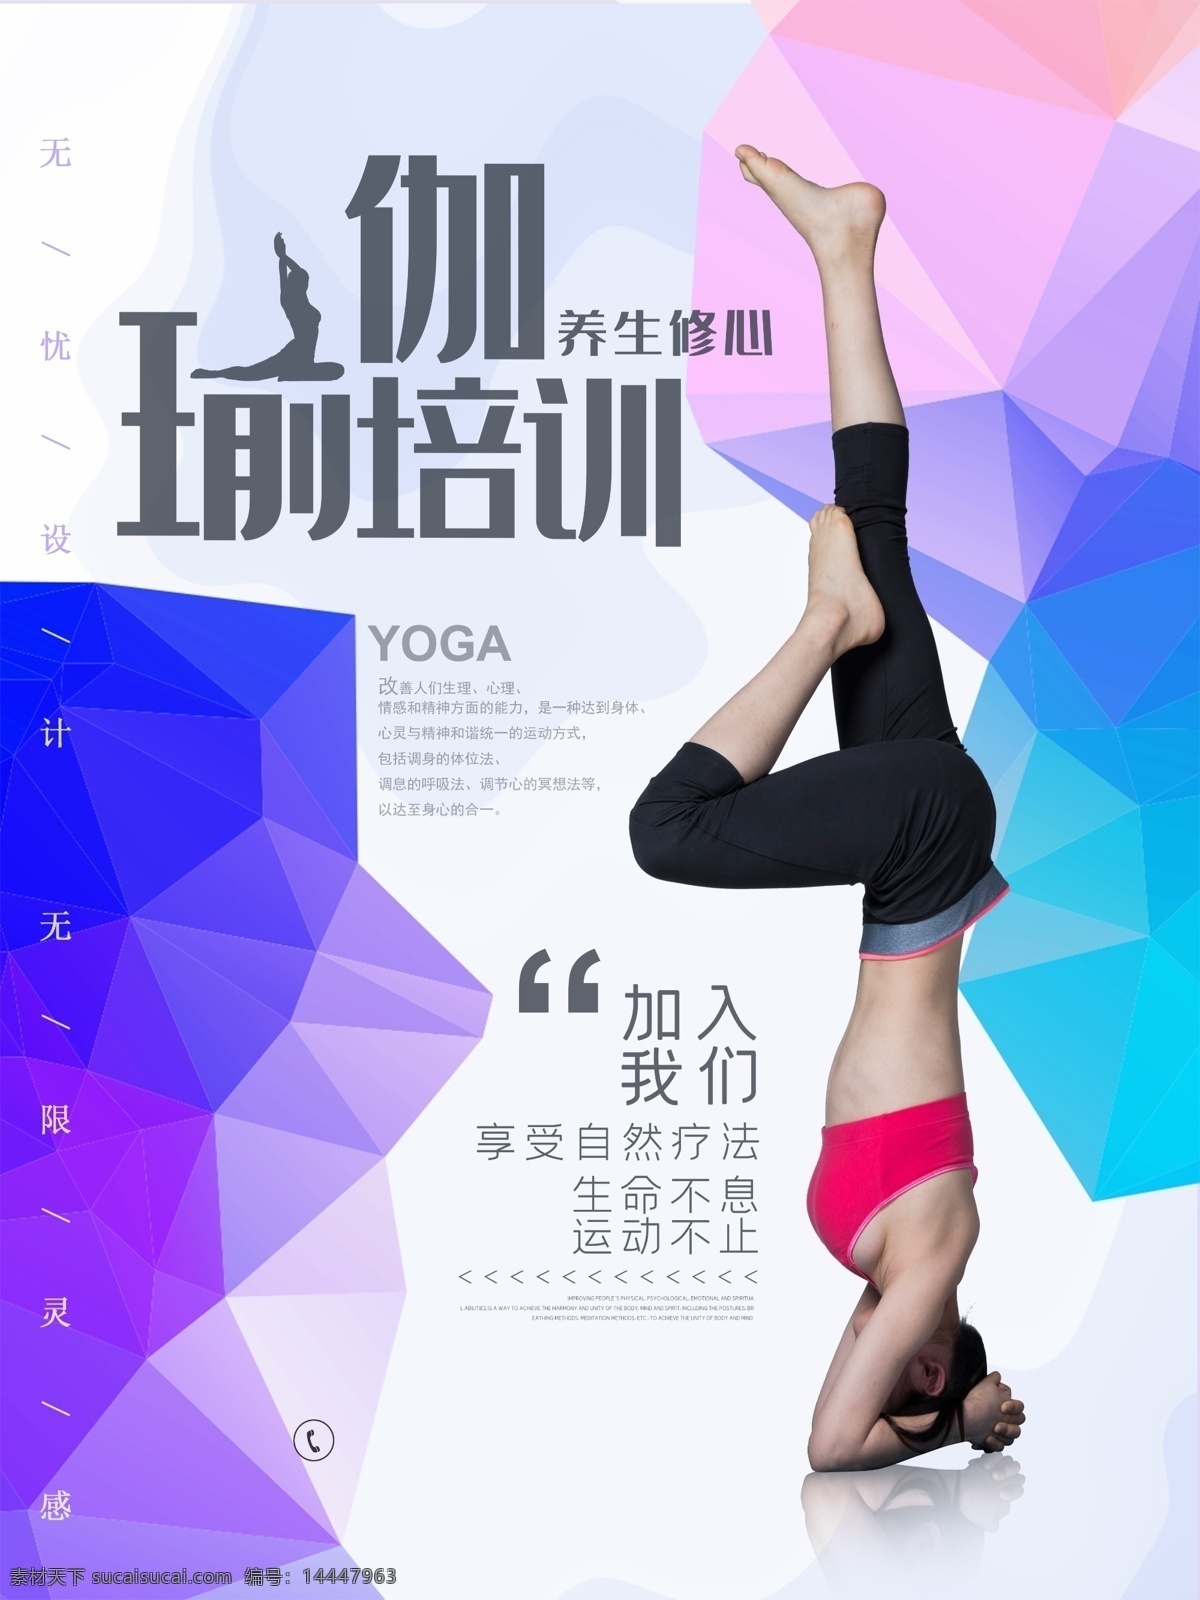 时尚 瑜伽 健身 海报 瑜伽广告 瑜伽海报 瑜伽健身 瑜伽健身广告 瑜伽健身海报 瑜伽球海报 瑜伽运动 瑜伽运动广告 瑜伽运动海报